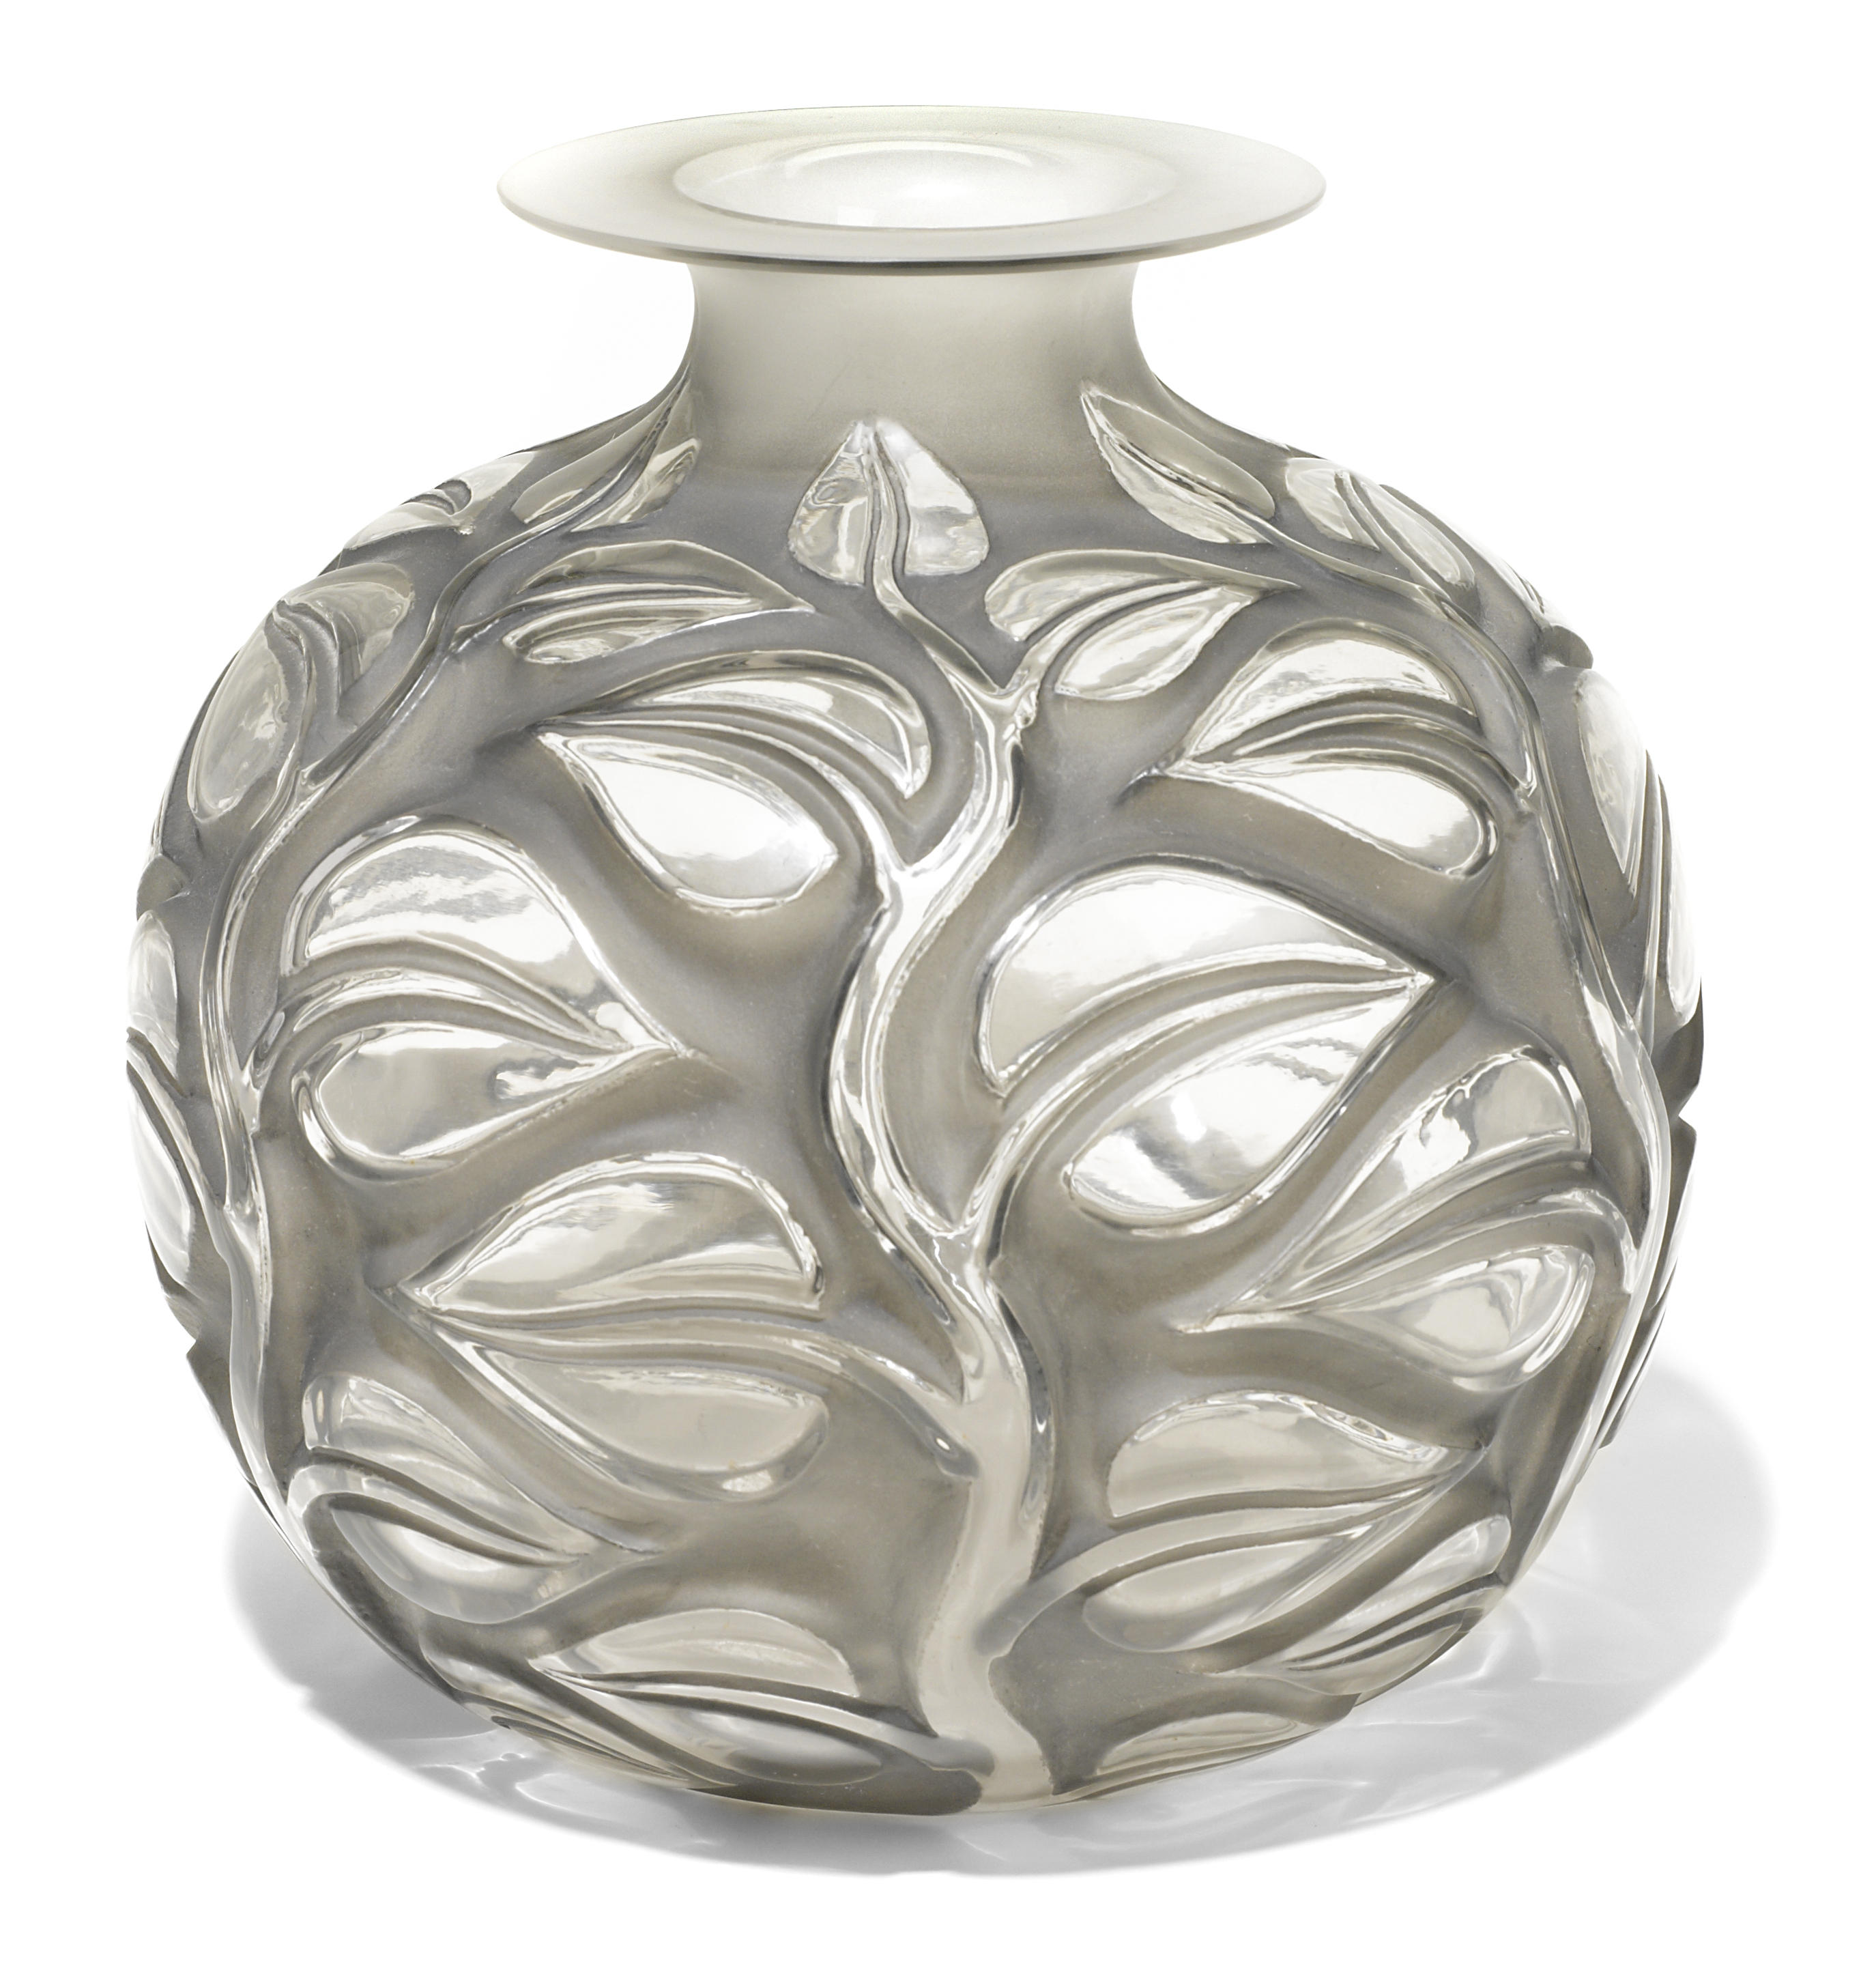 A Ren Lalique molded glass vase  12b95c